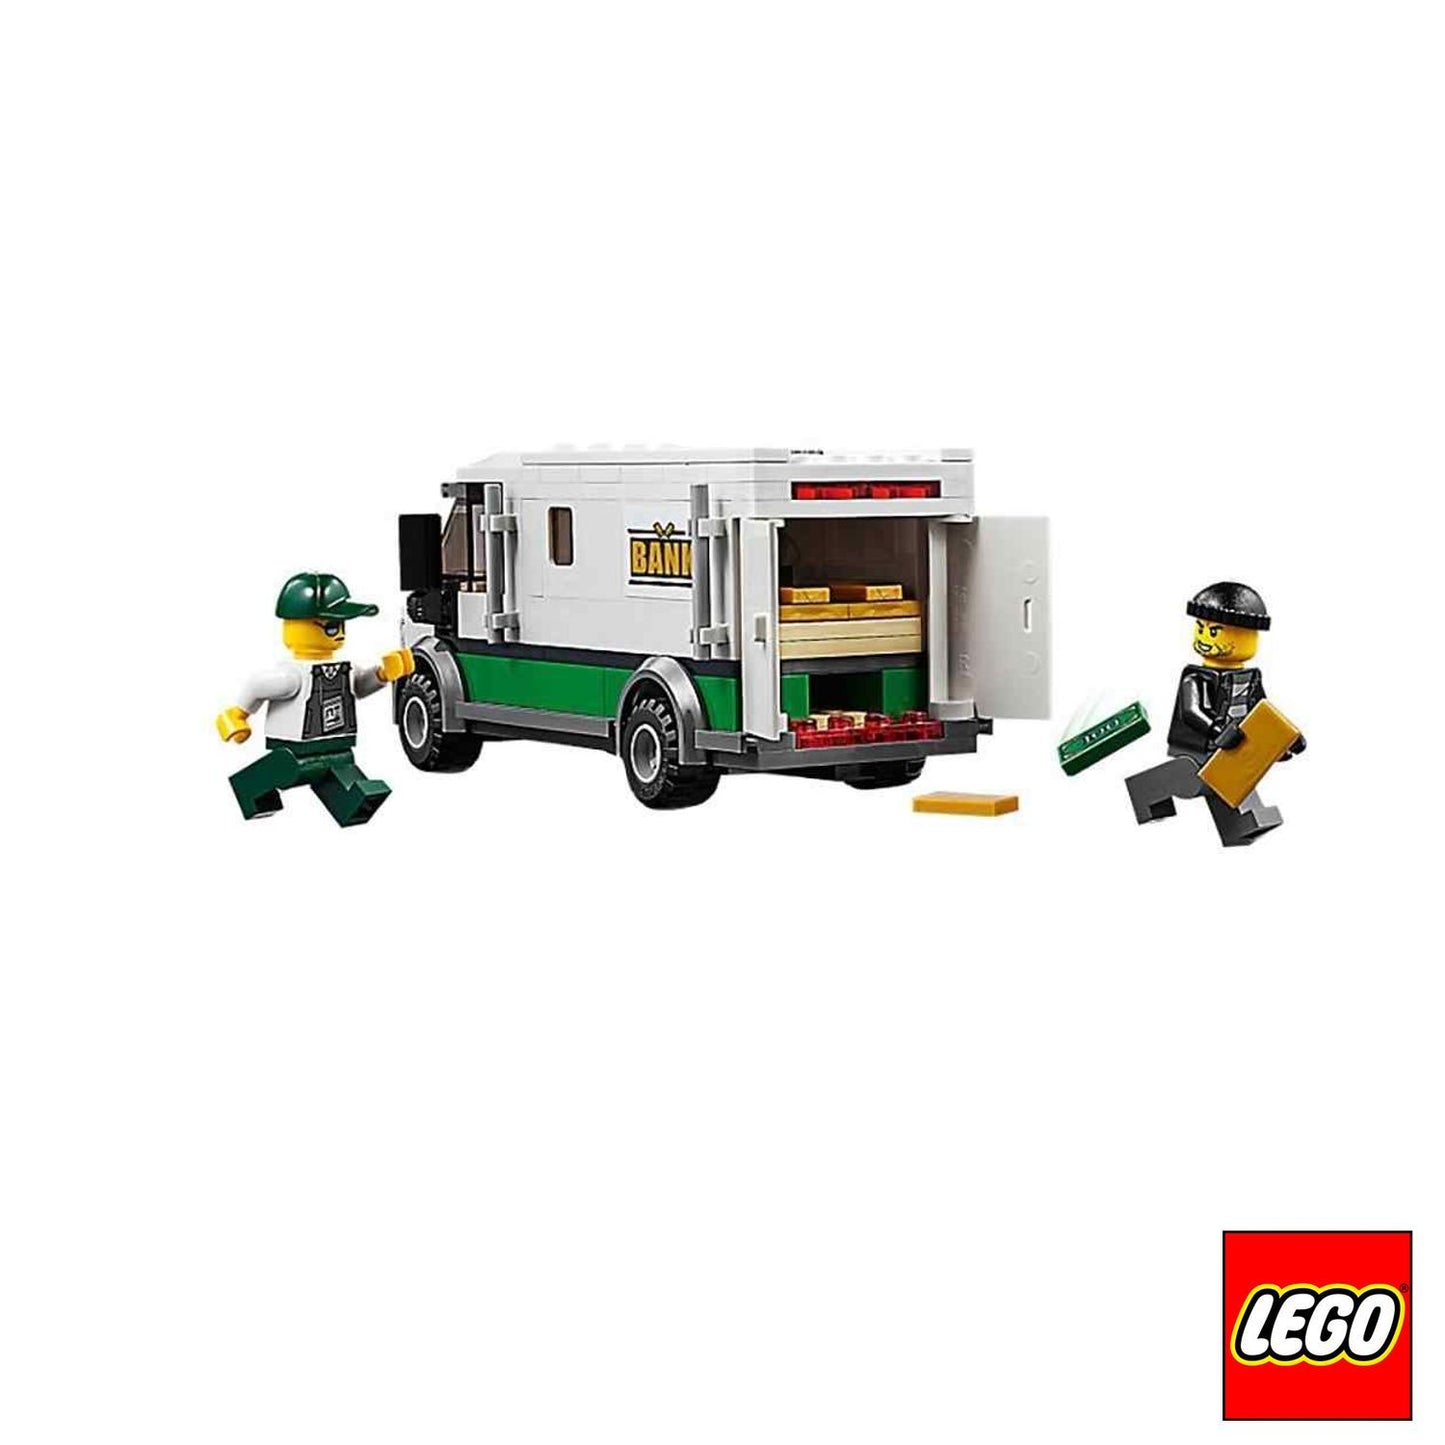 IPERBIMBO-LEGO-TRENO-MERCI1